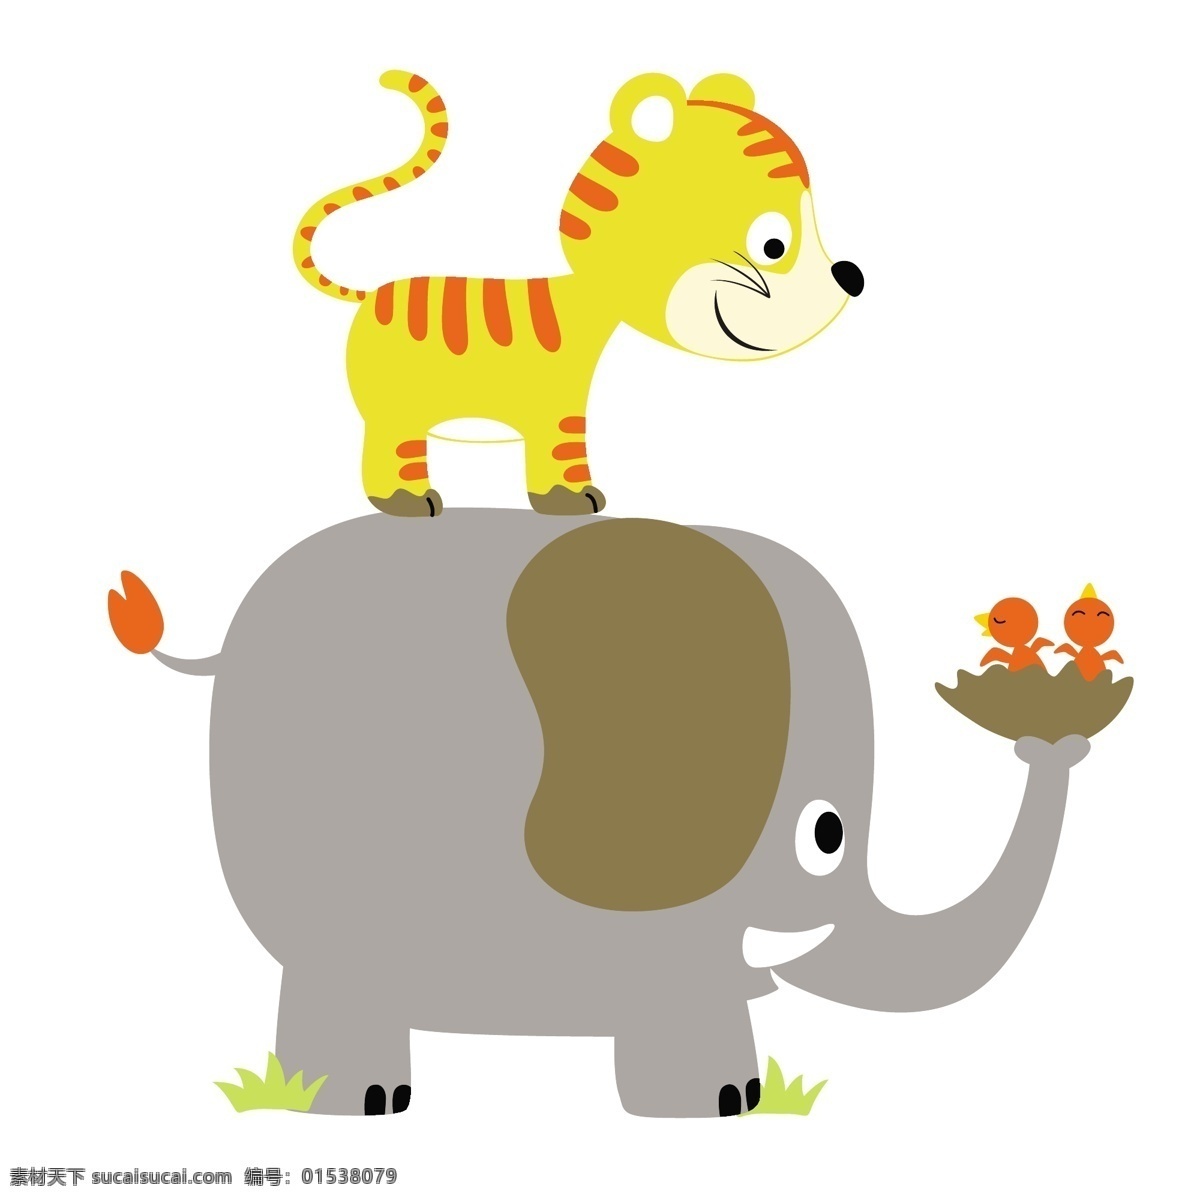 大象 小 老虎 卡通 动漫 可爱 装饰 小老虎 小动物 小动物矢量图 手绘图 小动物装饰